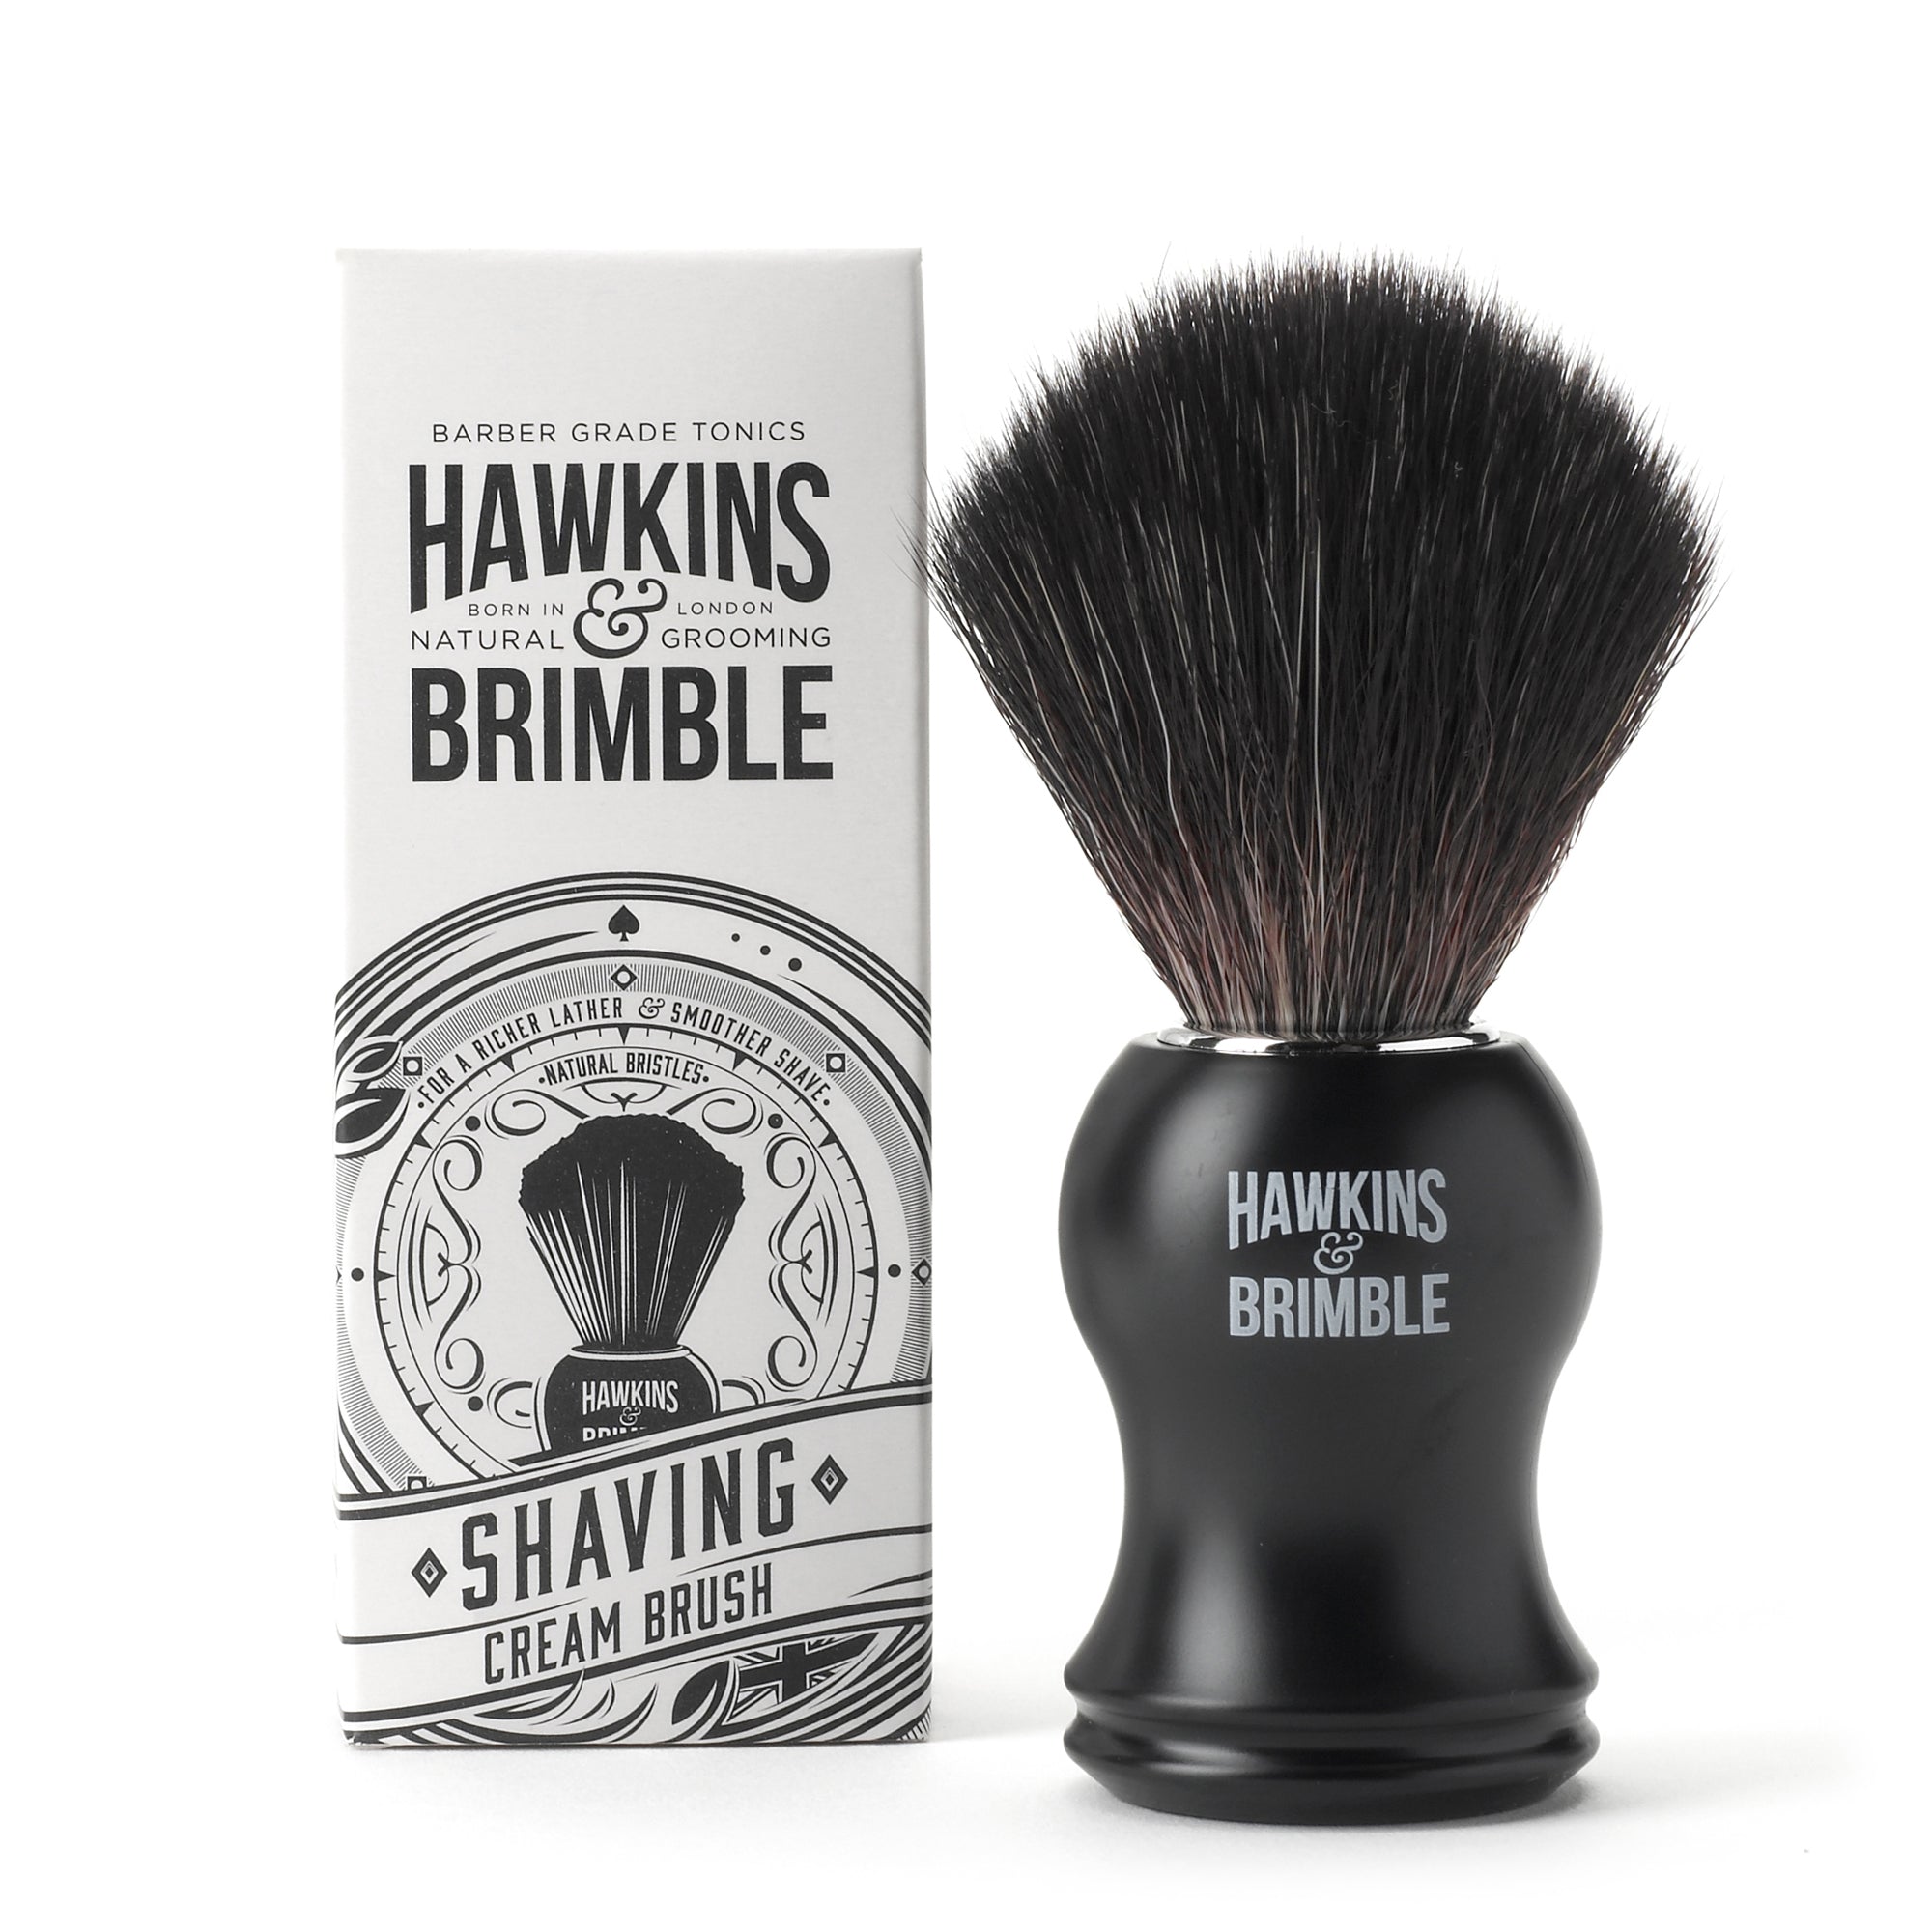 Synthetic Shaving Brush